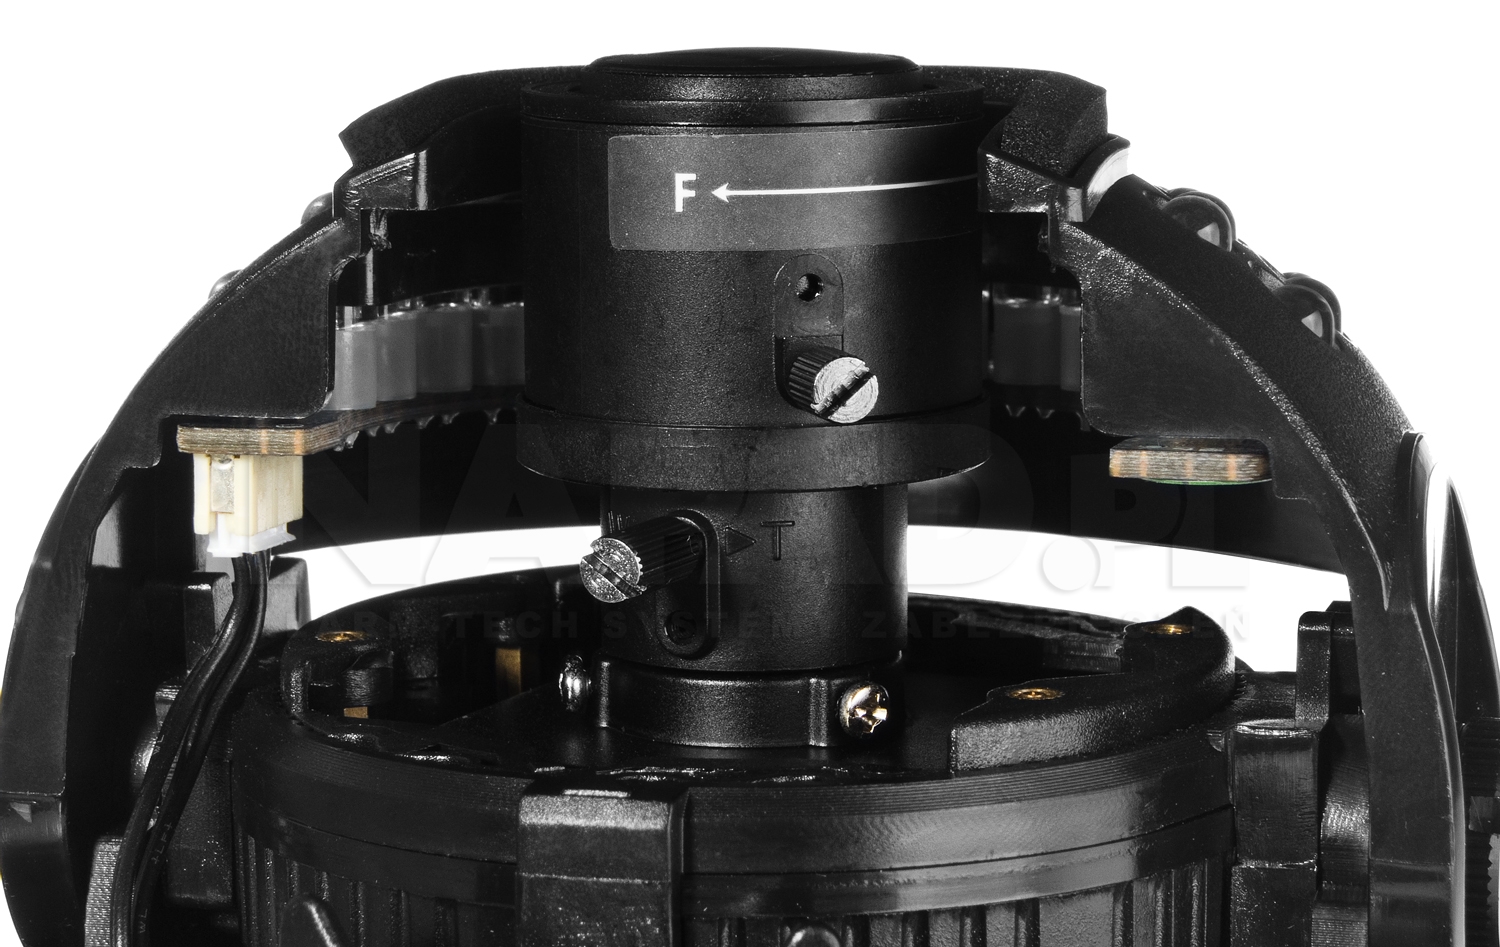 Wandaloodporna kamera kopułkowa HD-2030DV z regulowanym obiektywem.